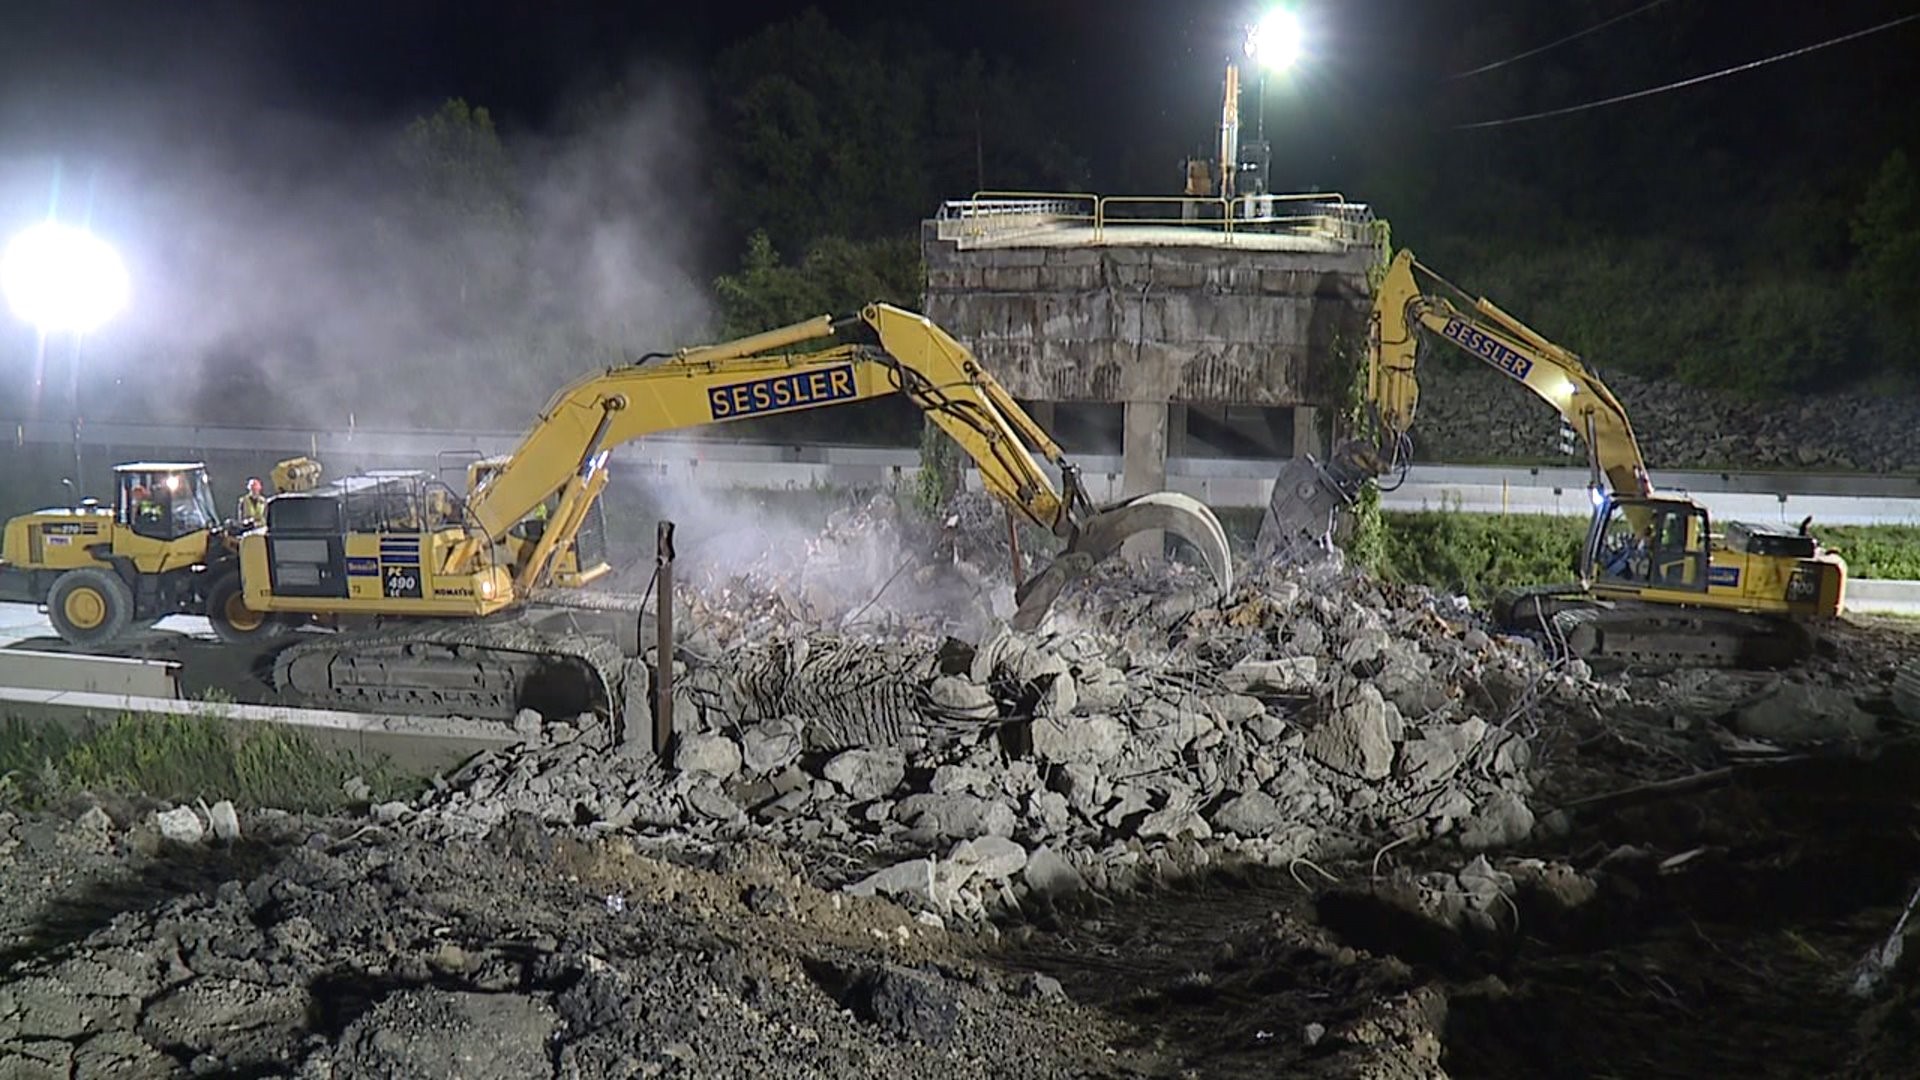 Bridge Demolition Closes Highway in Susquehanna County